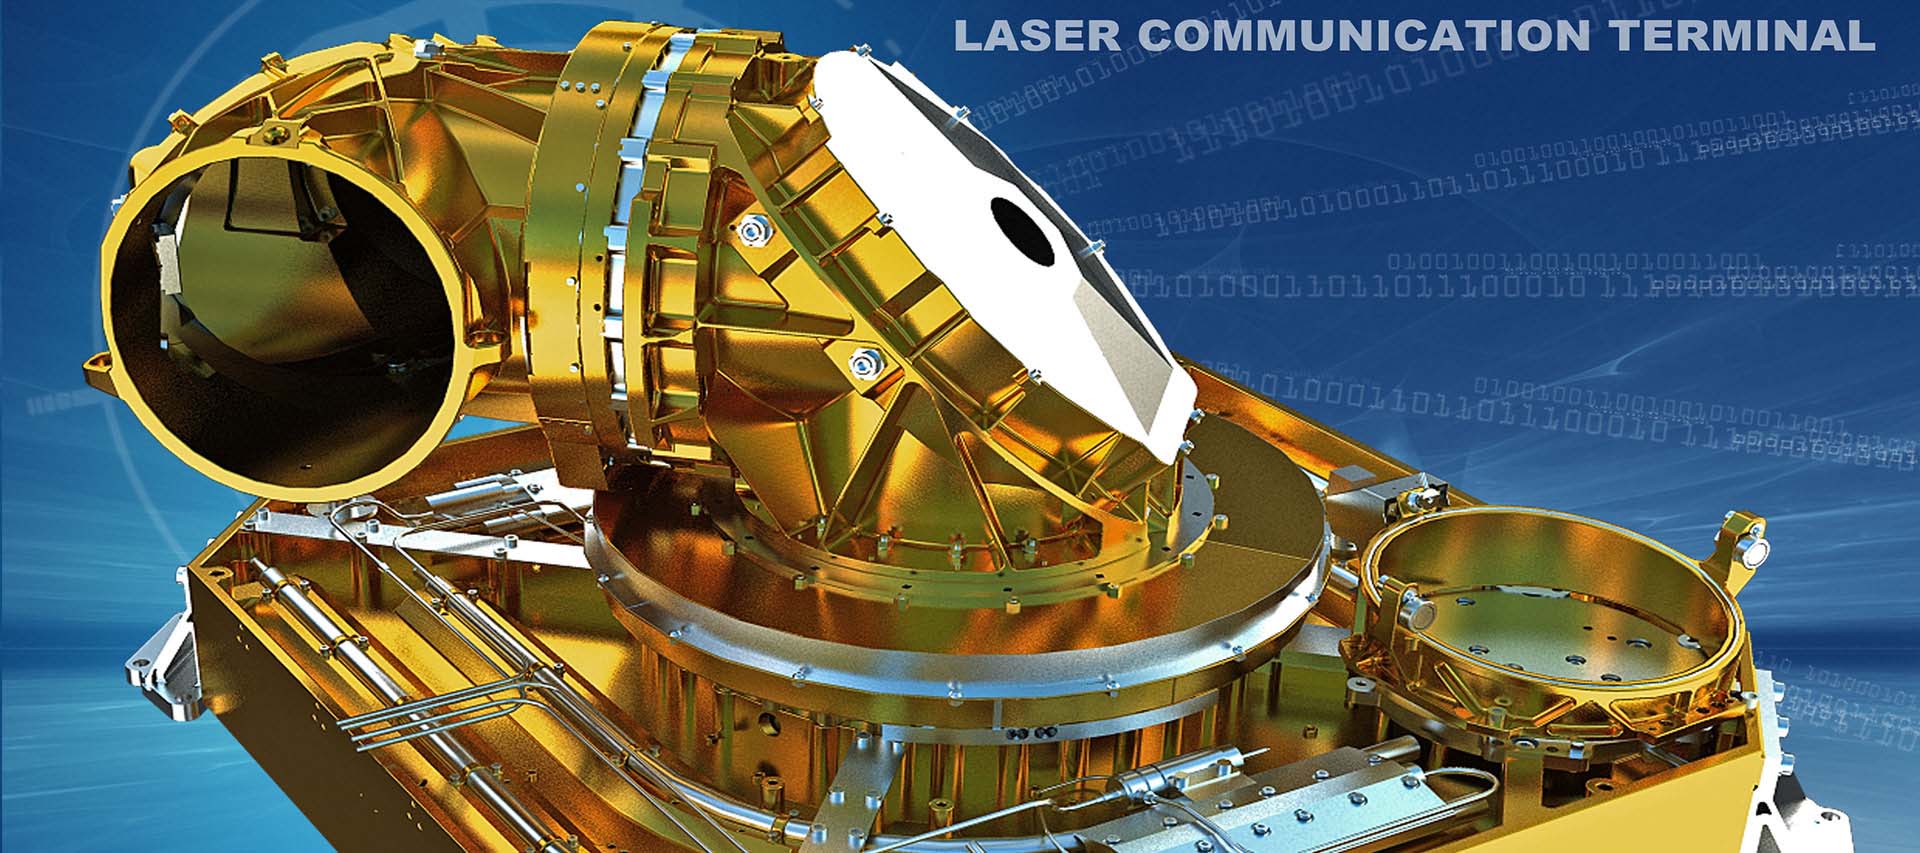 Produktwerbung, Grafikdesign und 3D-Visualisierung des LCT der TESAT Spacecom